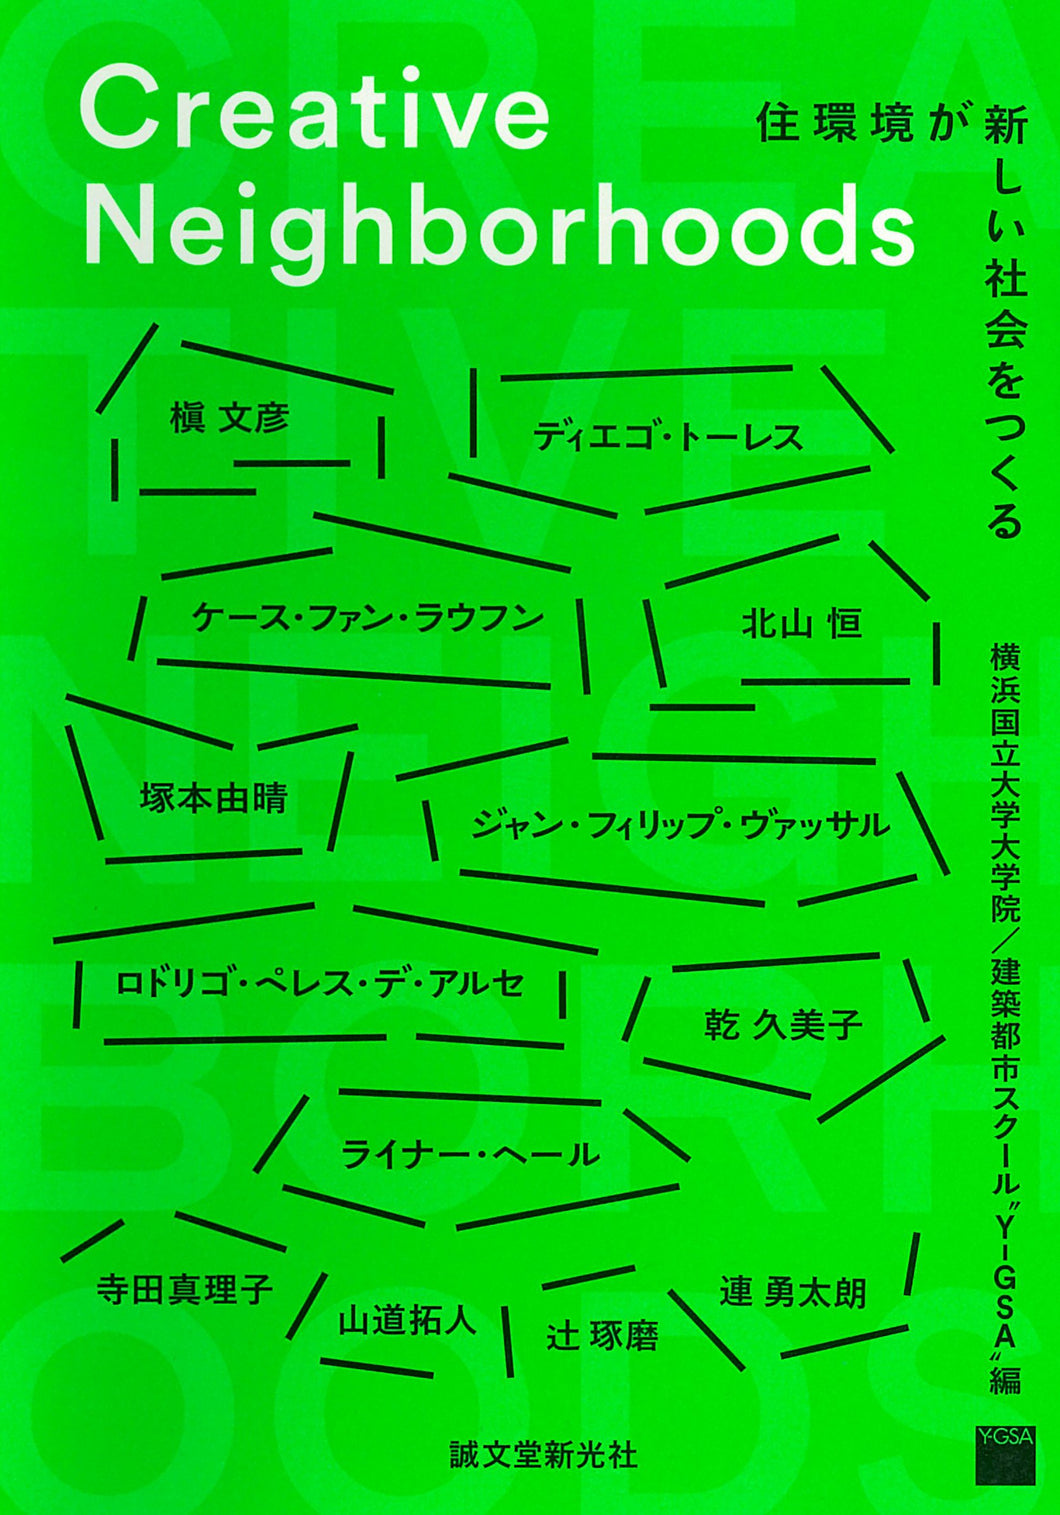 [Creative Neighborhoods] Creative Neighborhoods